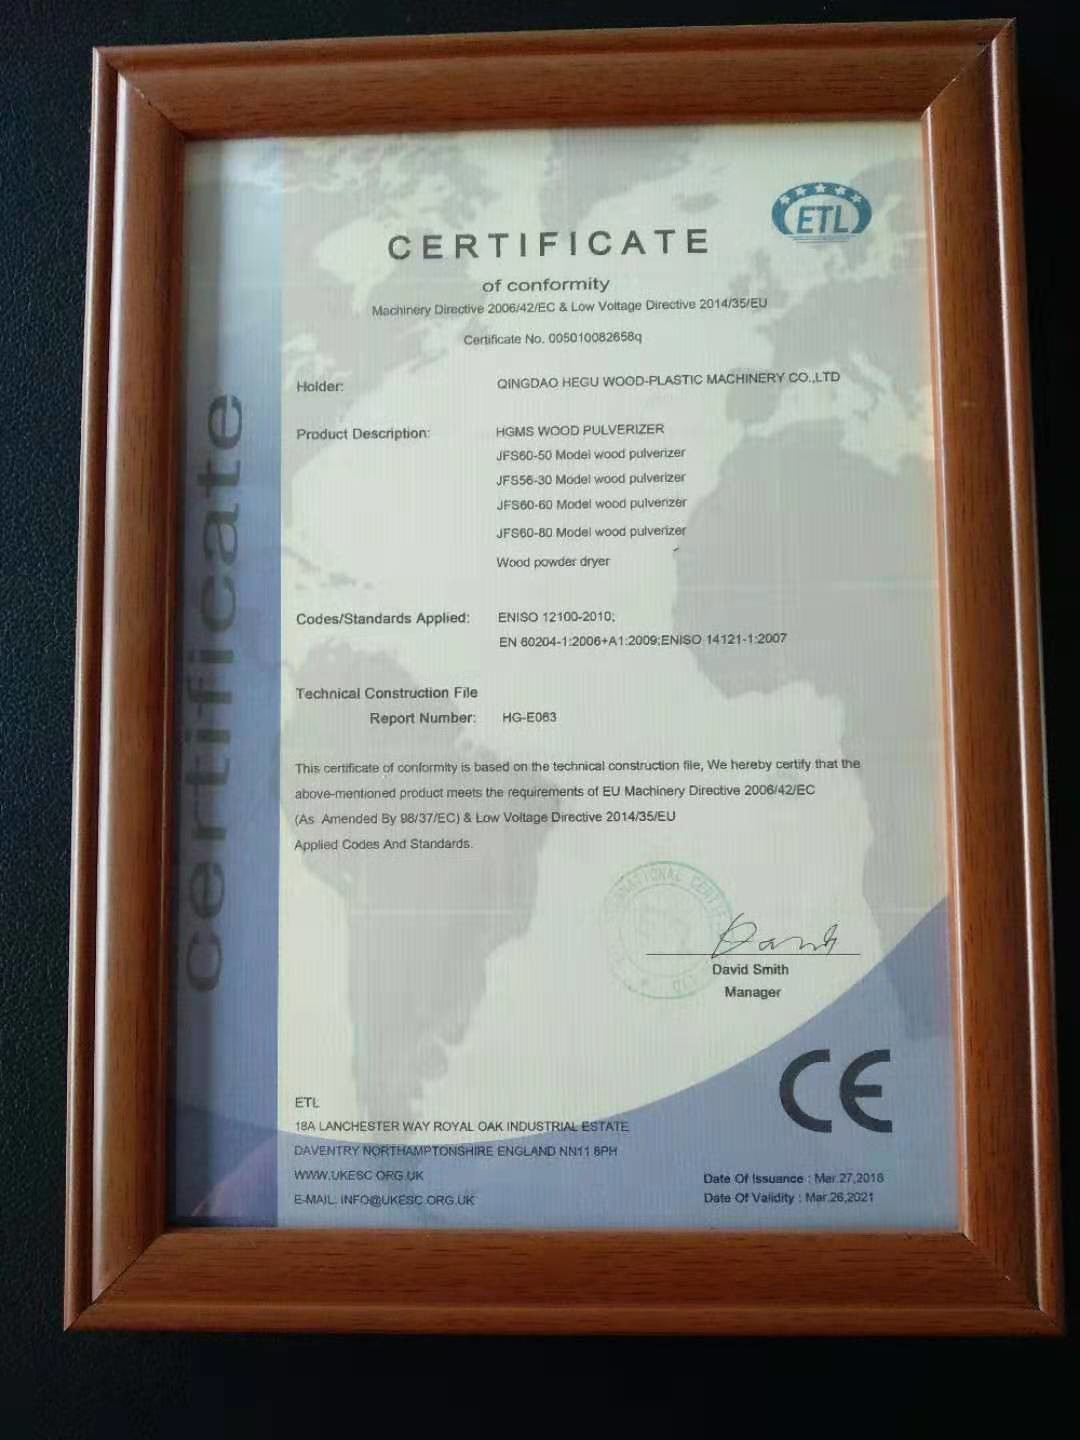 Qingdao HeGu Wood-Plastic Machinery Co.,Ltd Certifications